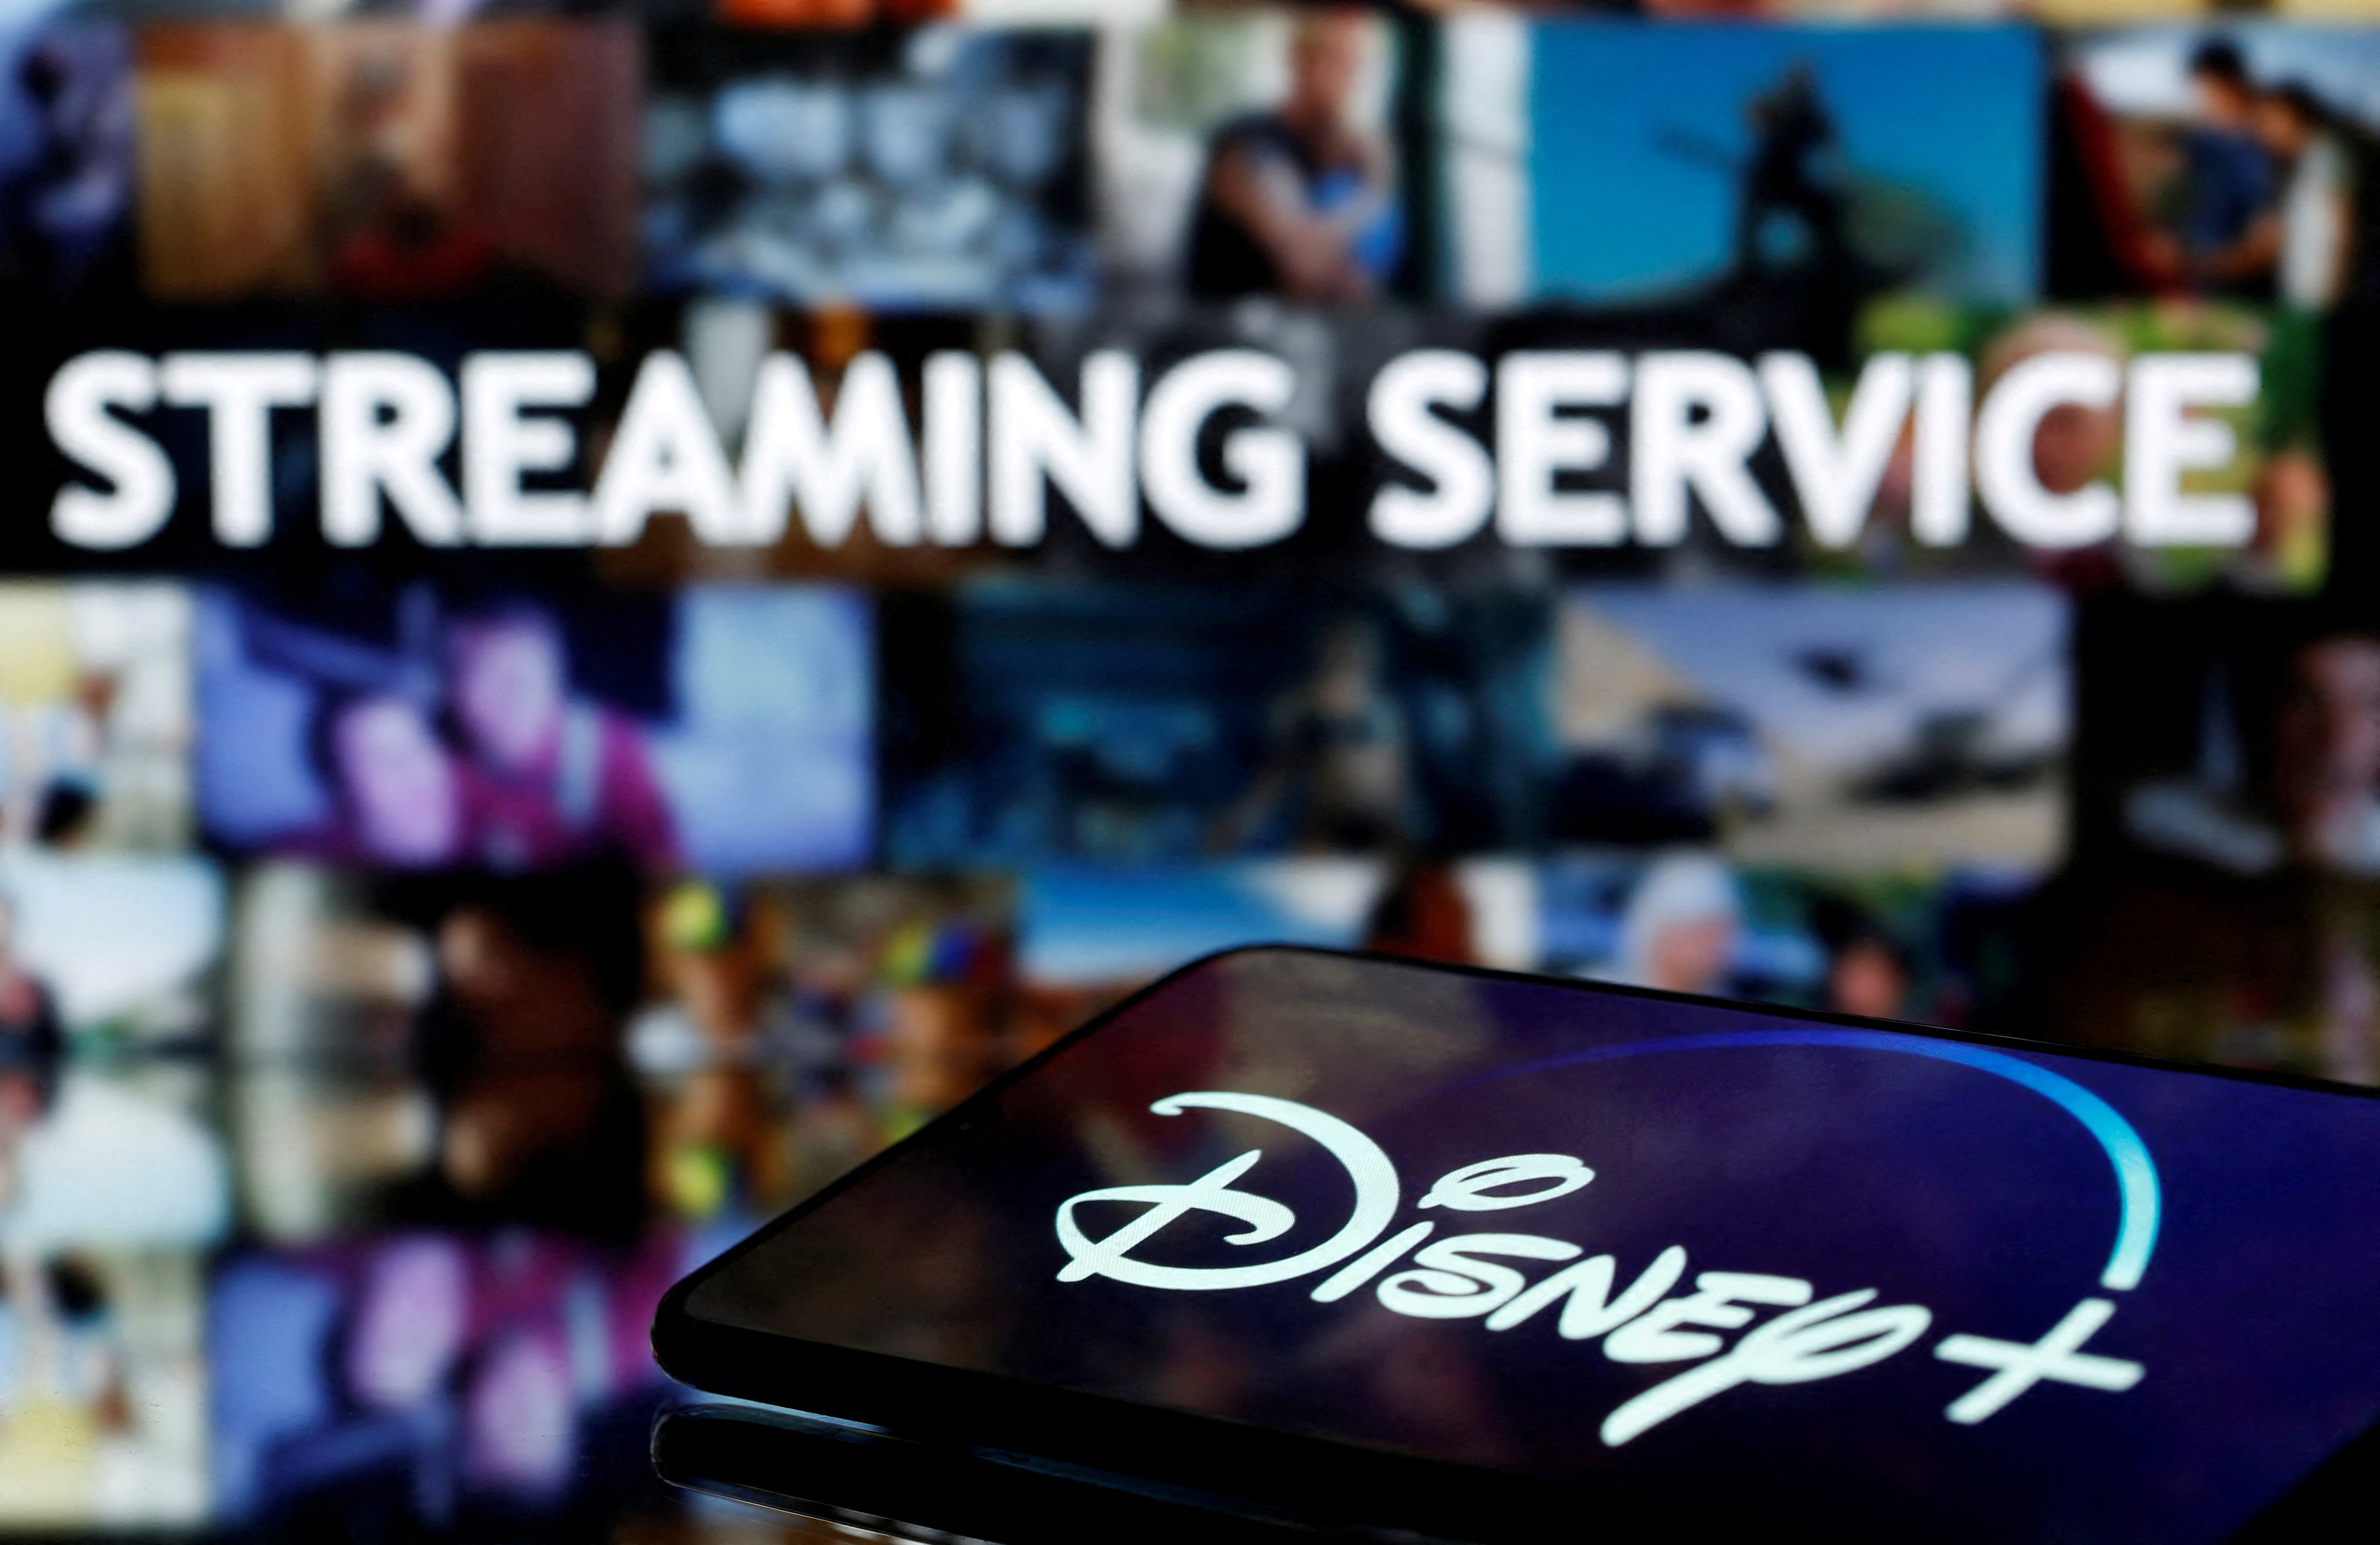 Con su plataforma que ofrece películas y series originales, Disney+ busca hacerle competencia a Netflix. (REUTERS/Dado Ruvic)